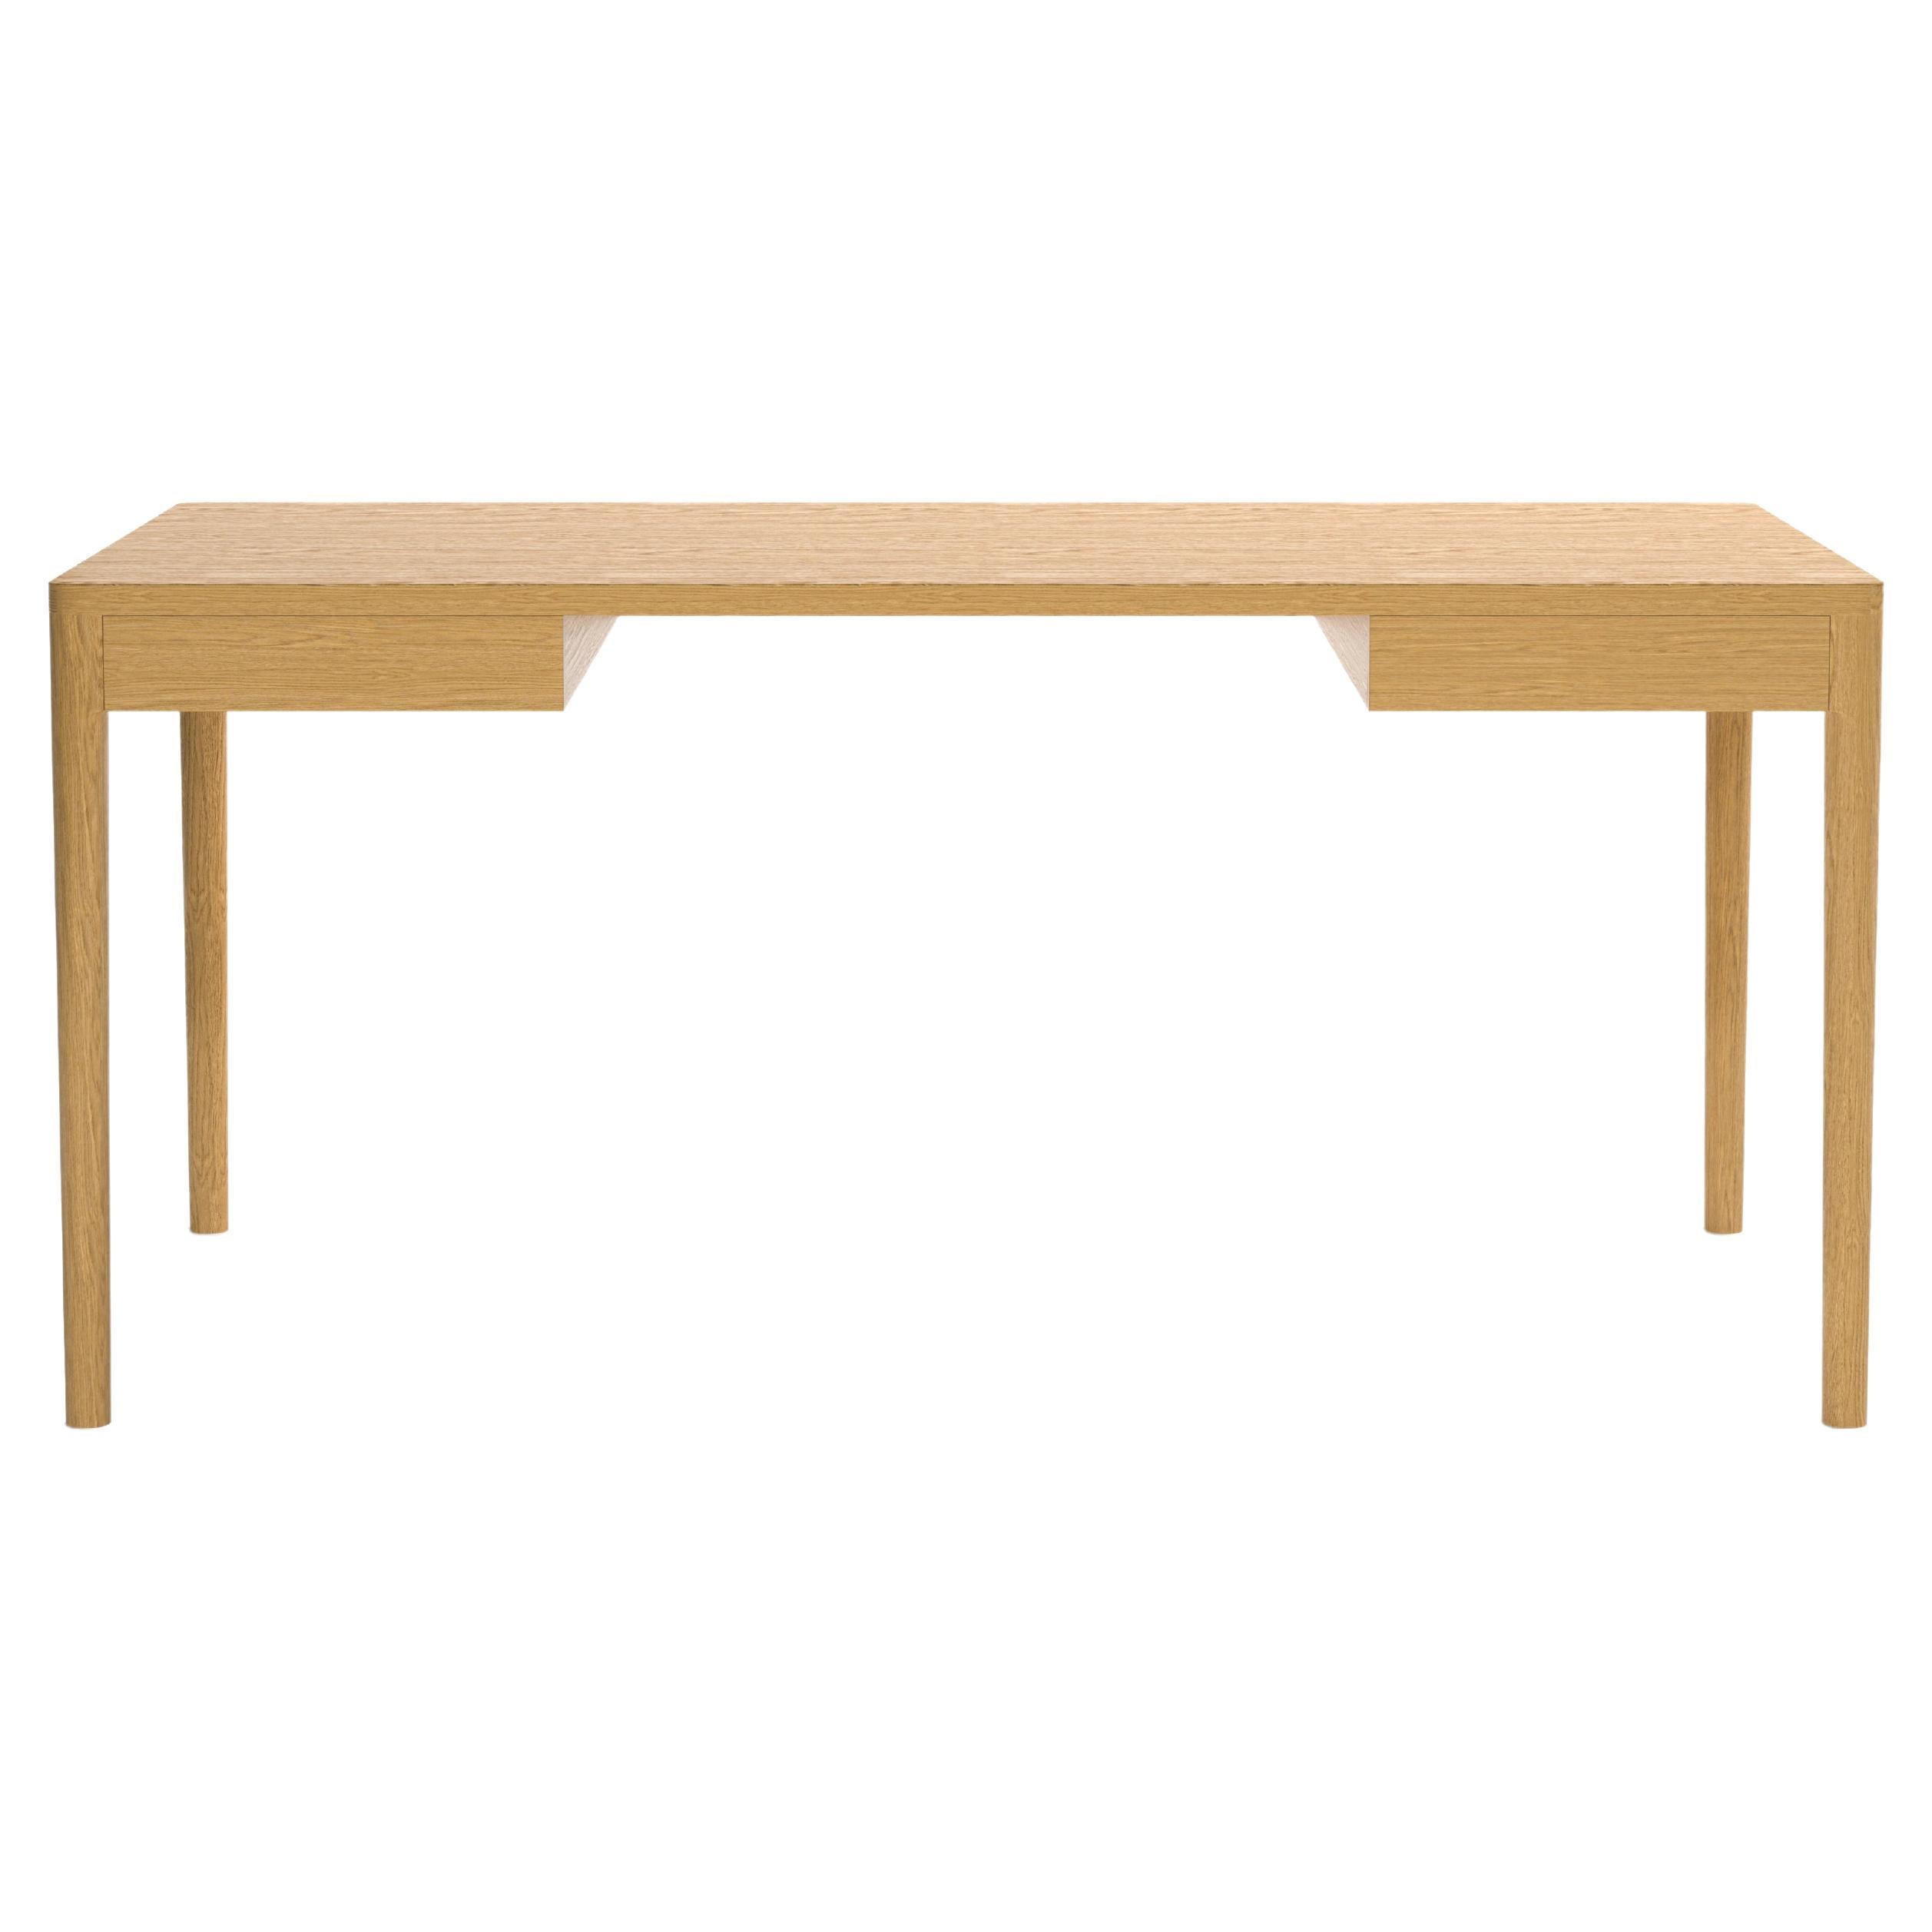 Minimalist Modern Desk in Oak 160x80 cm For Sale